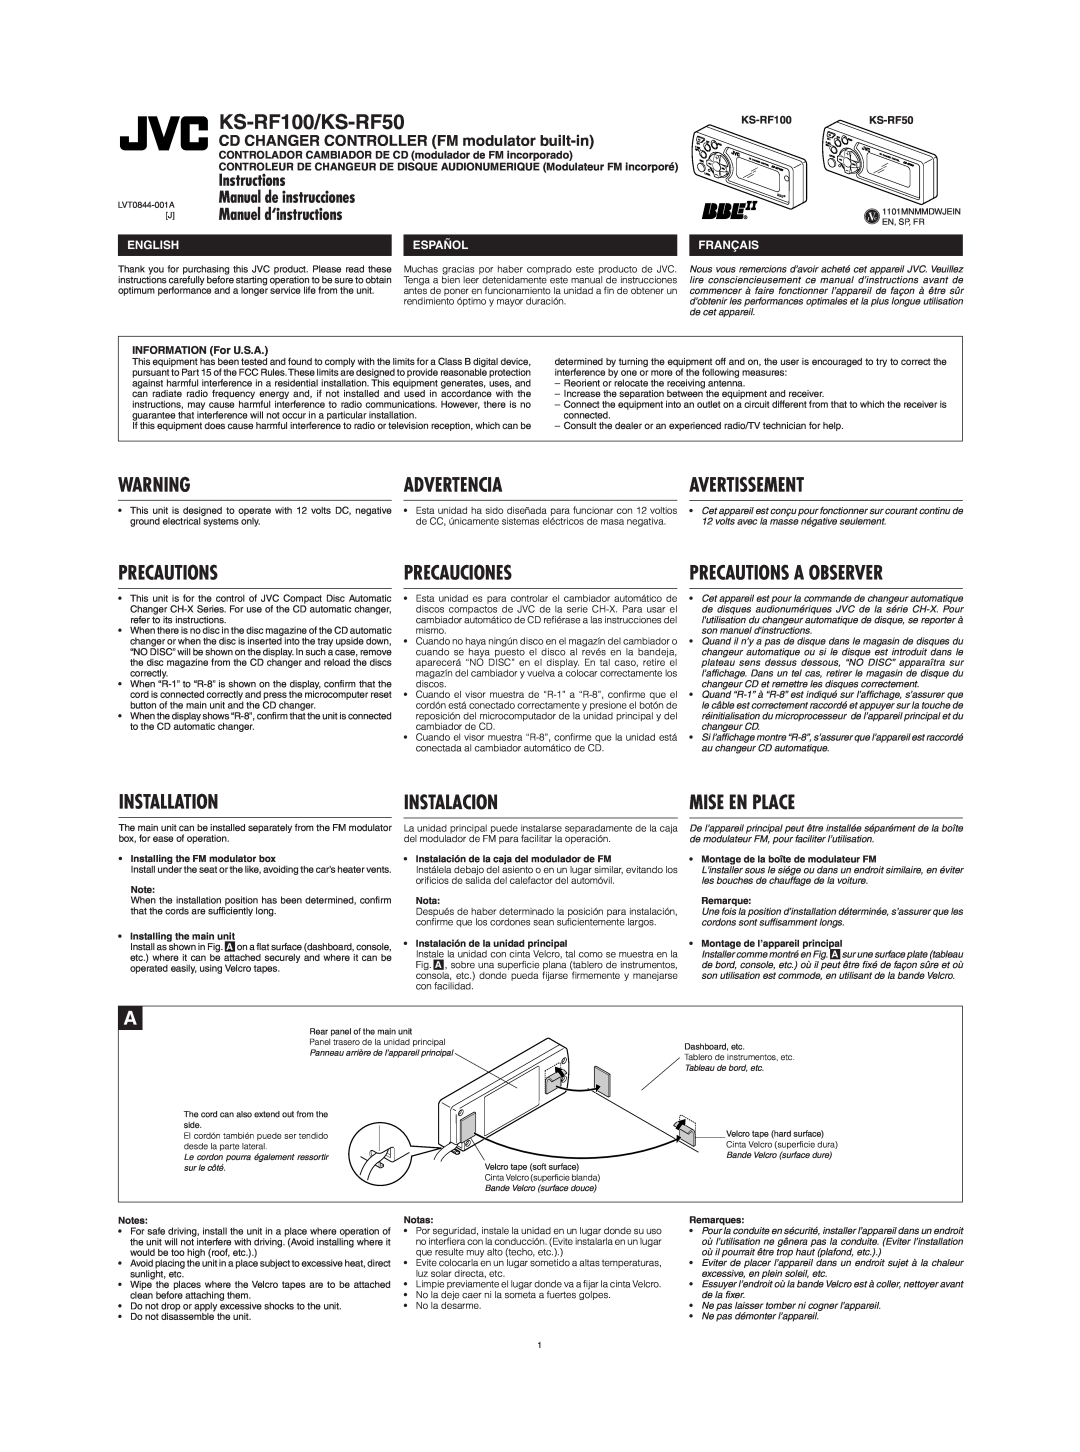 JVC CH-X470 KS-RF100/KS-RF50, Manual de instrucciones, Manuel d‘instructions, CD CHANGER CONTROLLER FM modulator built-in 